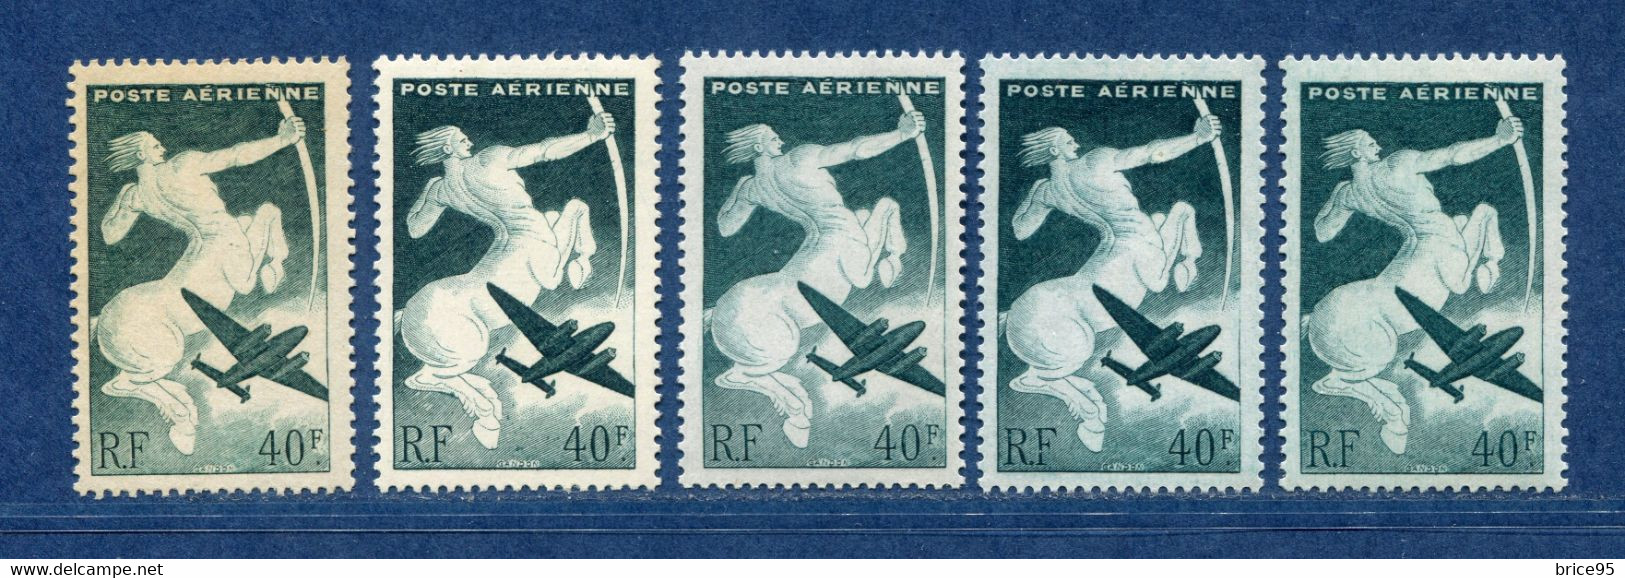 ⭐ France - Variété - YT PA N° 16 - Poste Aérienne - Couleurs - Pétouilles - Neuf Sans Charnière - 1946 ⭐ - Unused Stamps